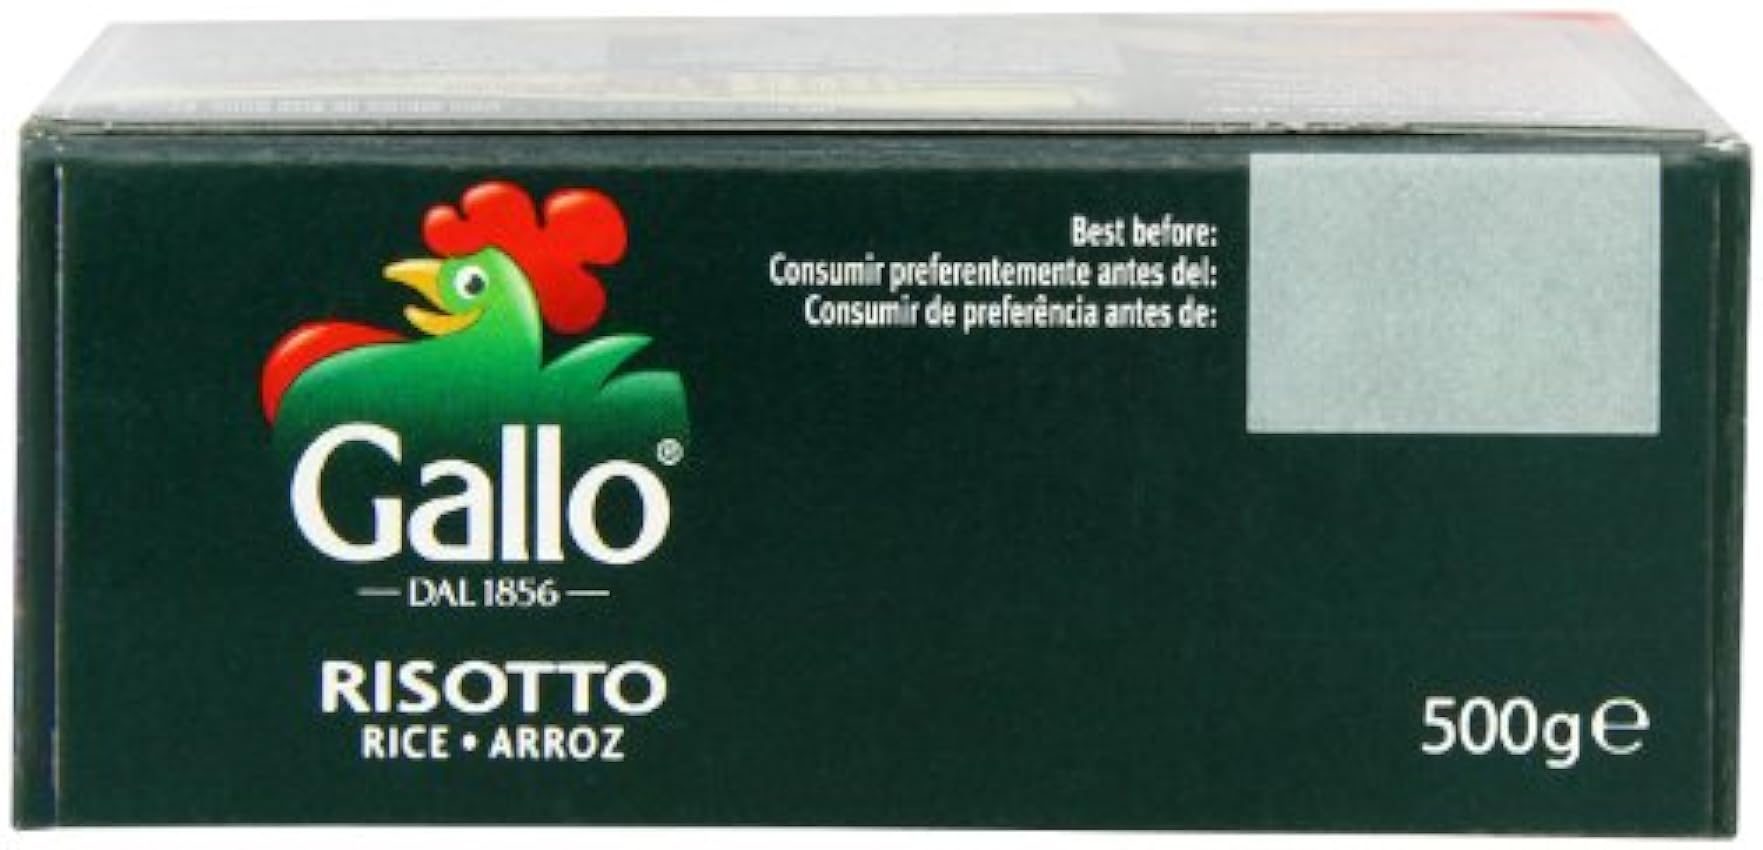 Riso Gallo Arborio Risotto de riz (500g) - Paquet de 6 LXhch16E